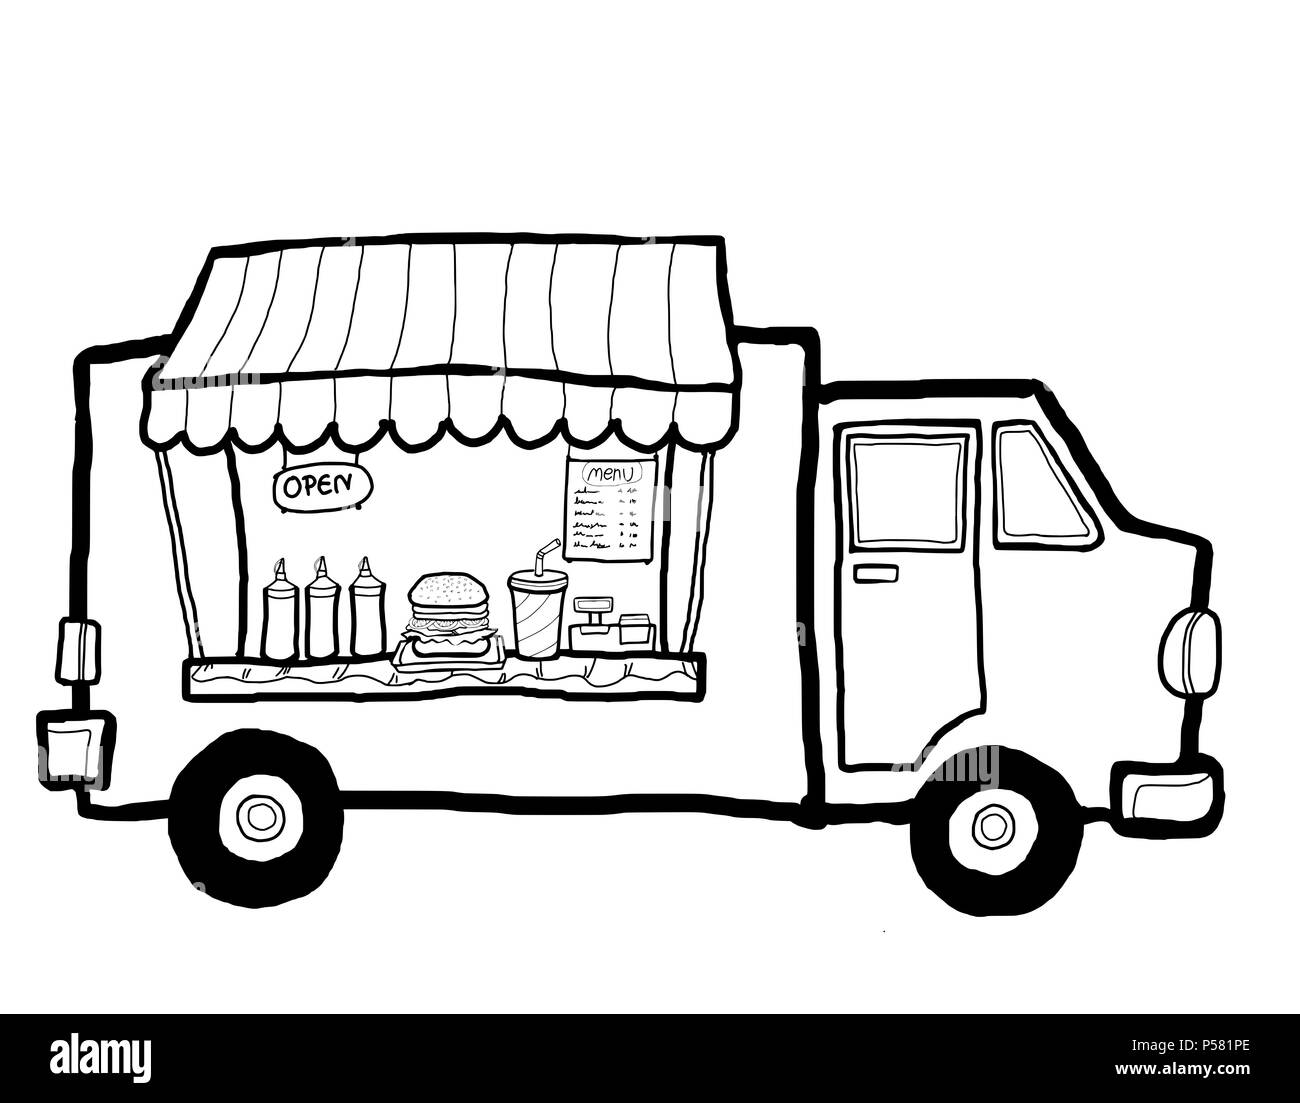 Eine Street Food Truck in der Stadt verkaufen, nehmen Essen und Trinken hamburger. Stockfoto